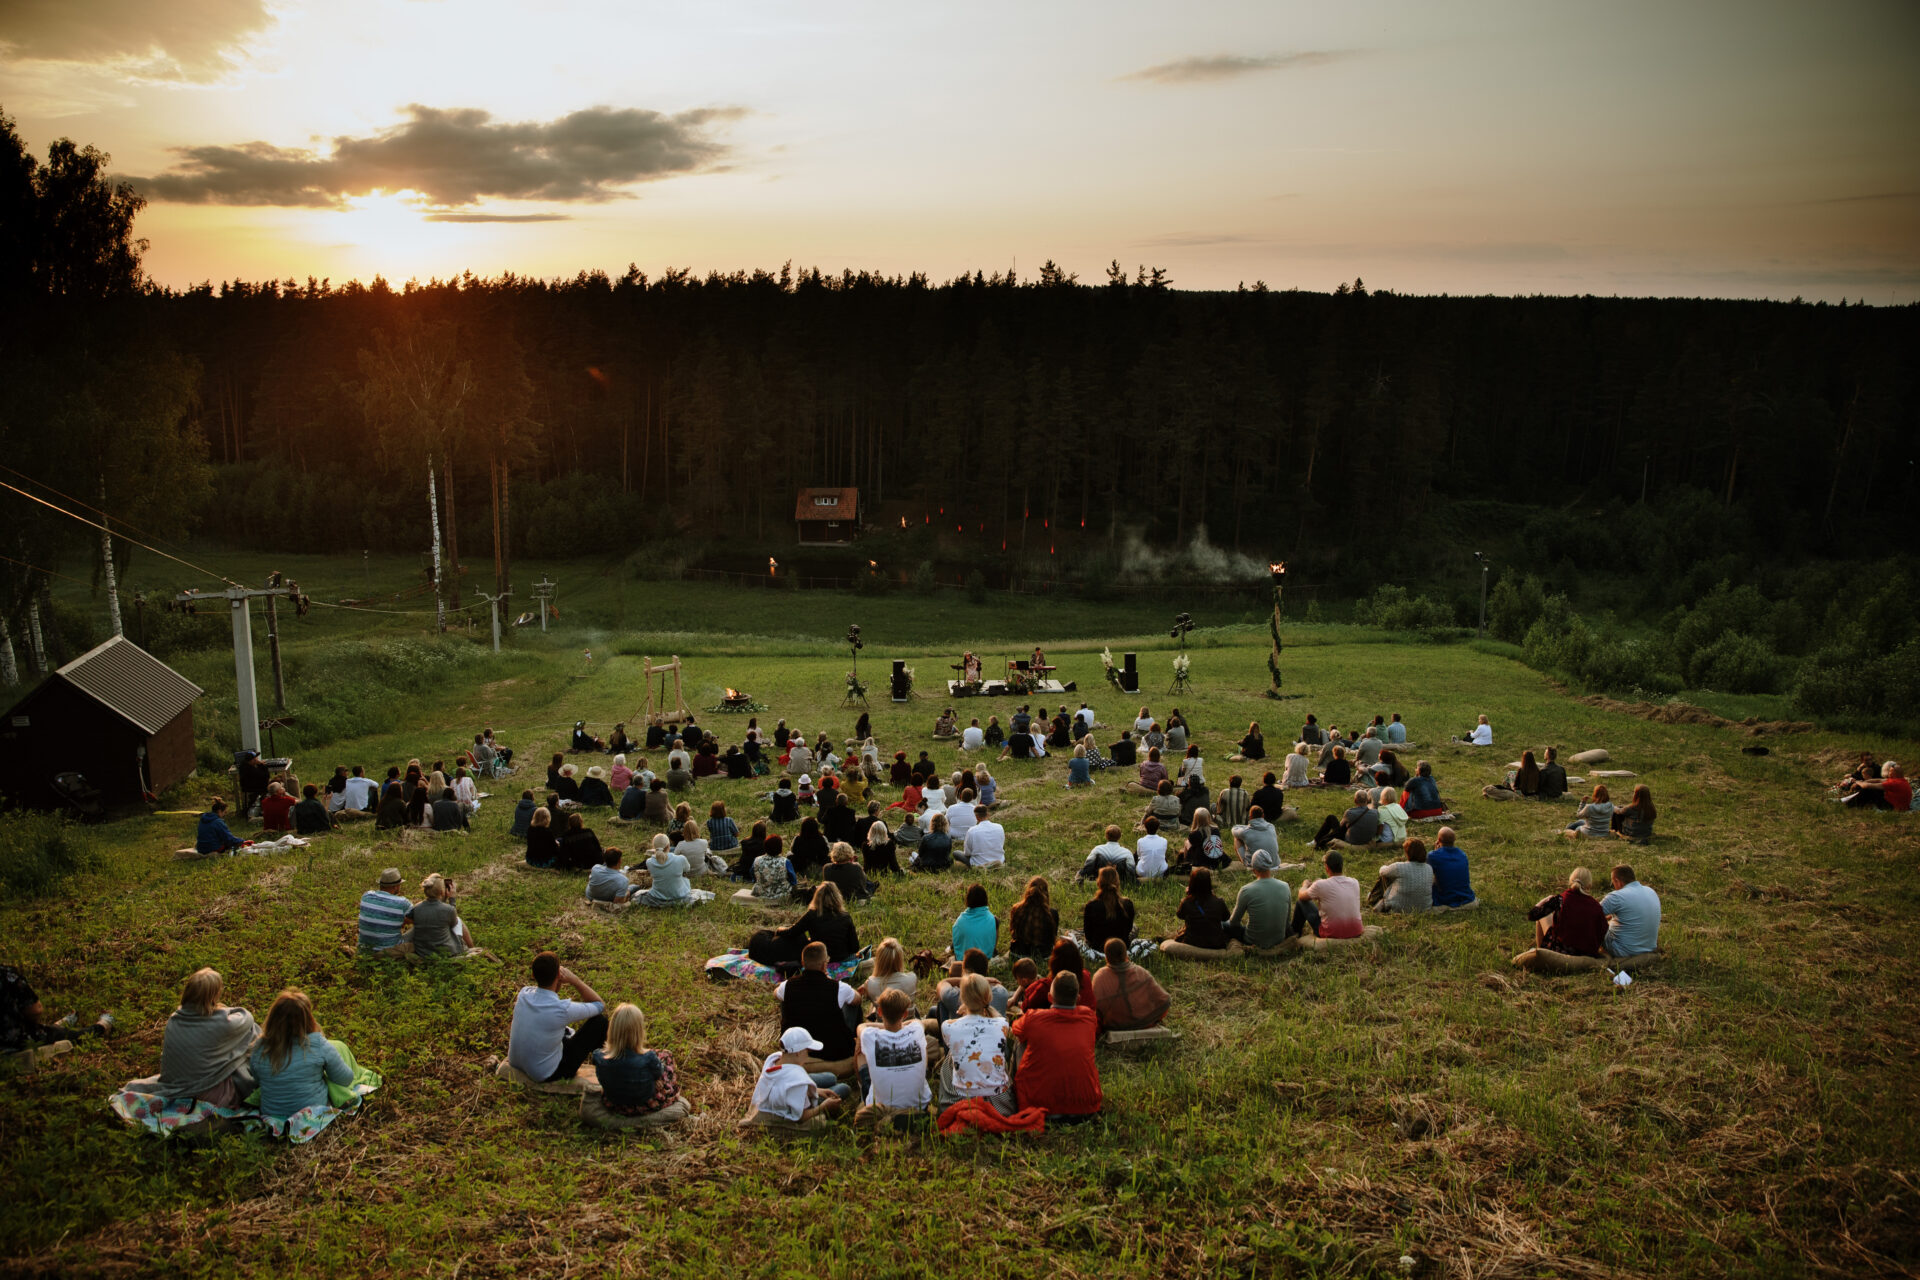 Jau trešo vasaru Valmierā norisināsies koncertu cikls “Mūda” – mūzika dabā. Sajūtu koncerti ir muzikāls baudījums, kura laikā izvēlētā norises vieta kļūst par neierastu, vēl neapgūtu skatuvi un vienlaikus – skaistu ainavisko scenogrāfiju. Katrs koncerts apvienos Latvijā atpazīstamus un iemīļotus mūziķus, kuri uzstāsies kopā ar jauniešiem no Valmieras, savukārt dabai šajā koncertu ciklā piešķirta vadošā loma.